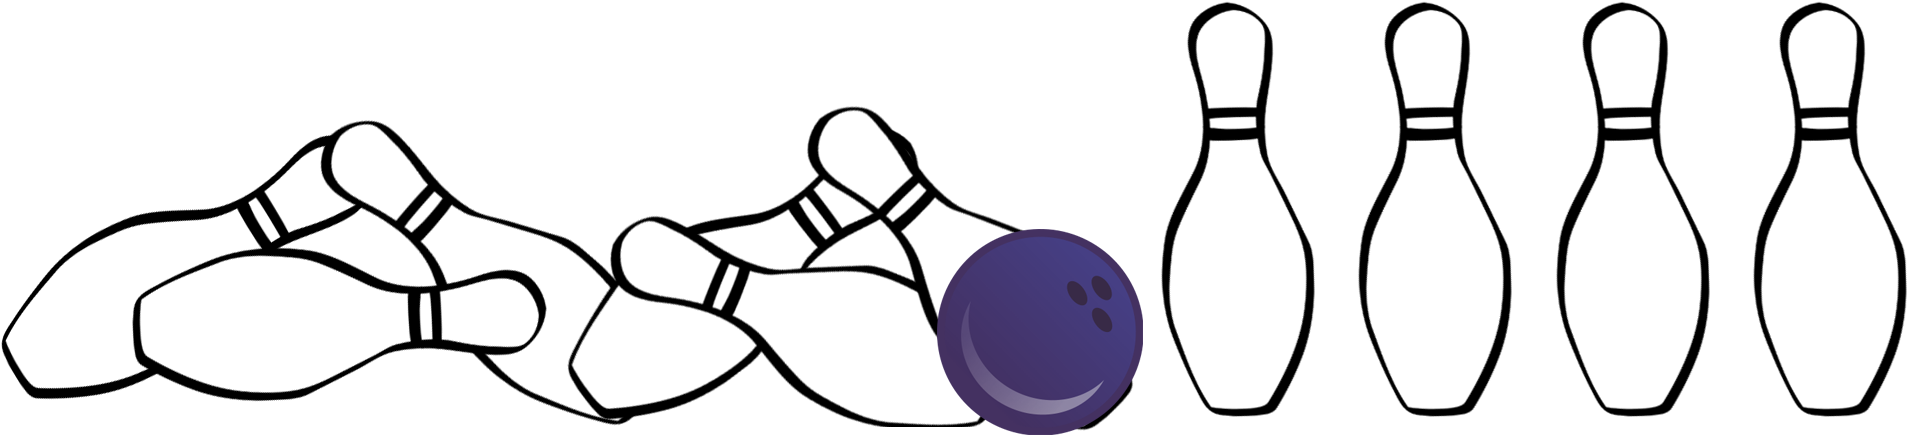 $60 Goal - Ten-pin Bowling (2012x546)